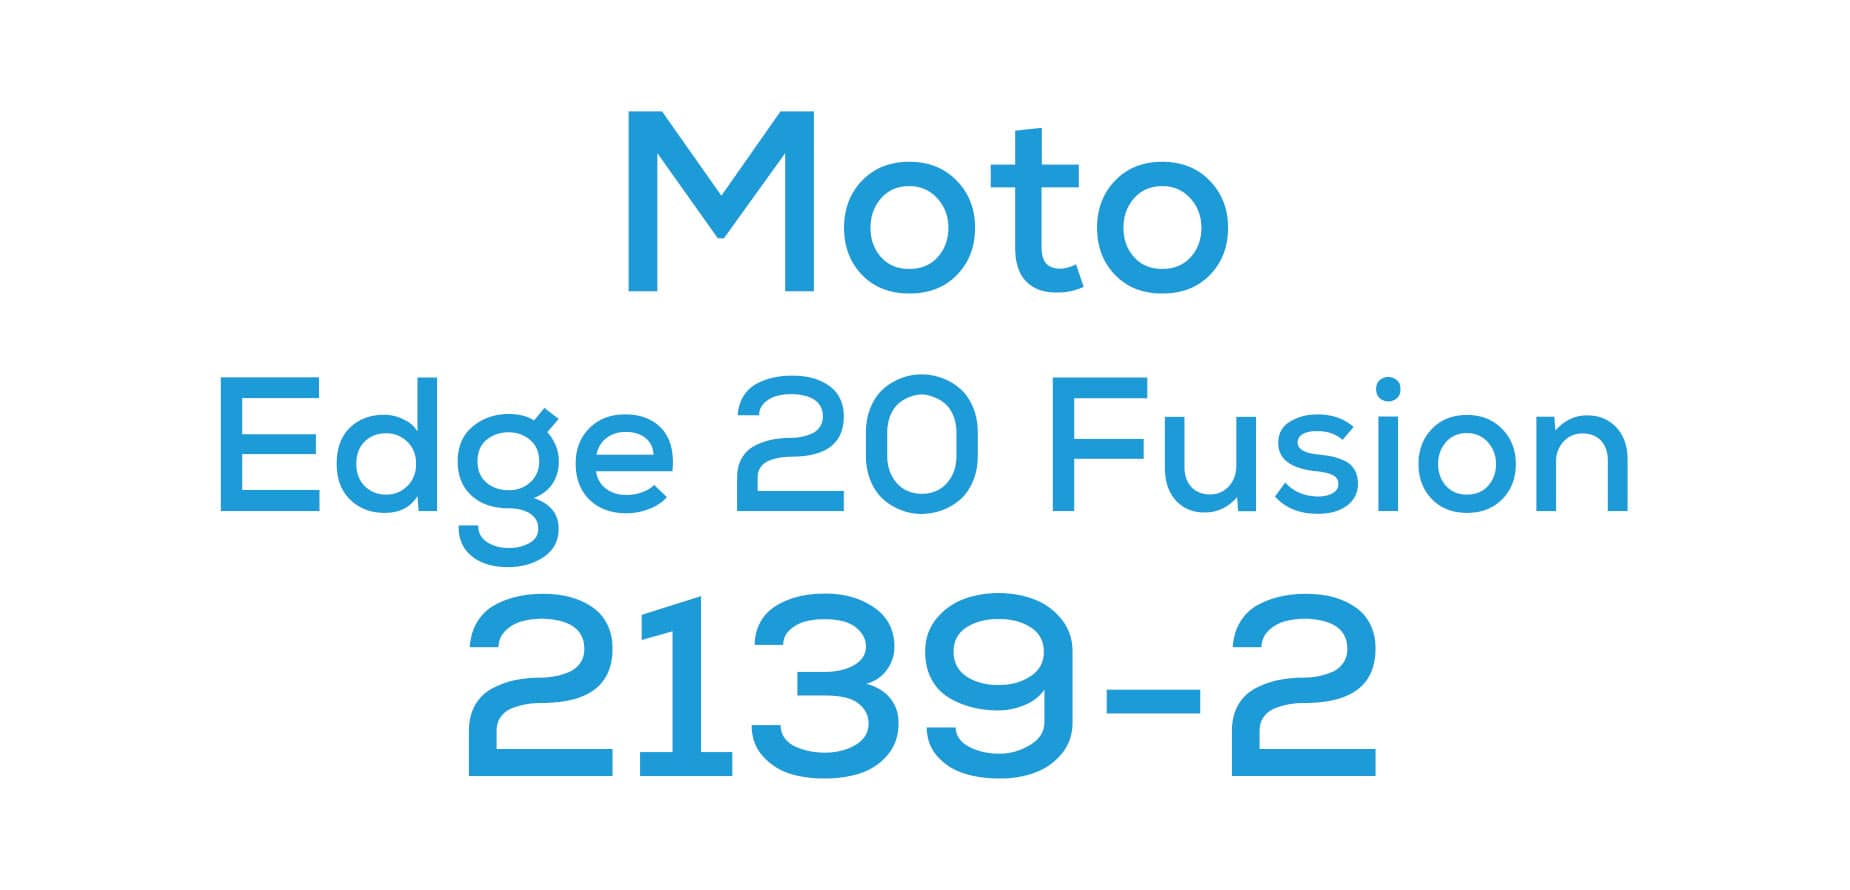 Edge 20 Fusion (2139-2)